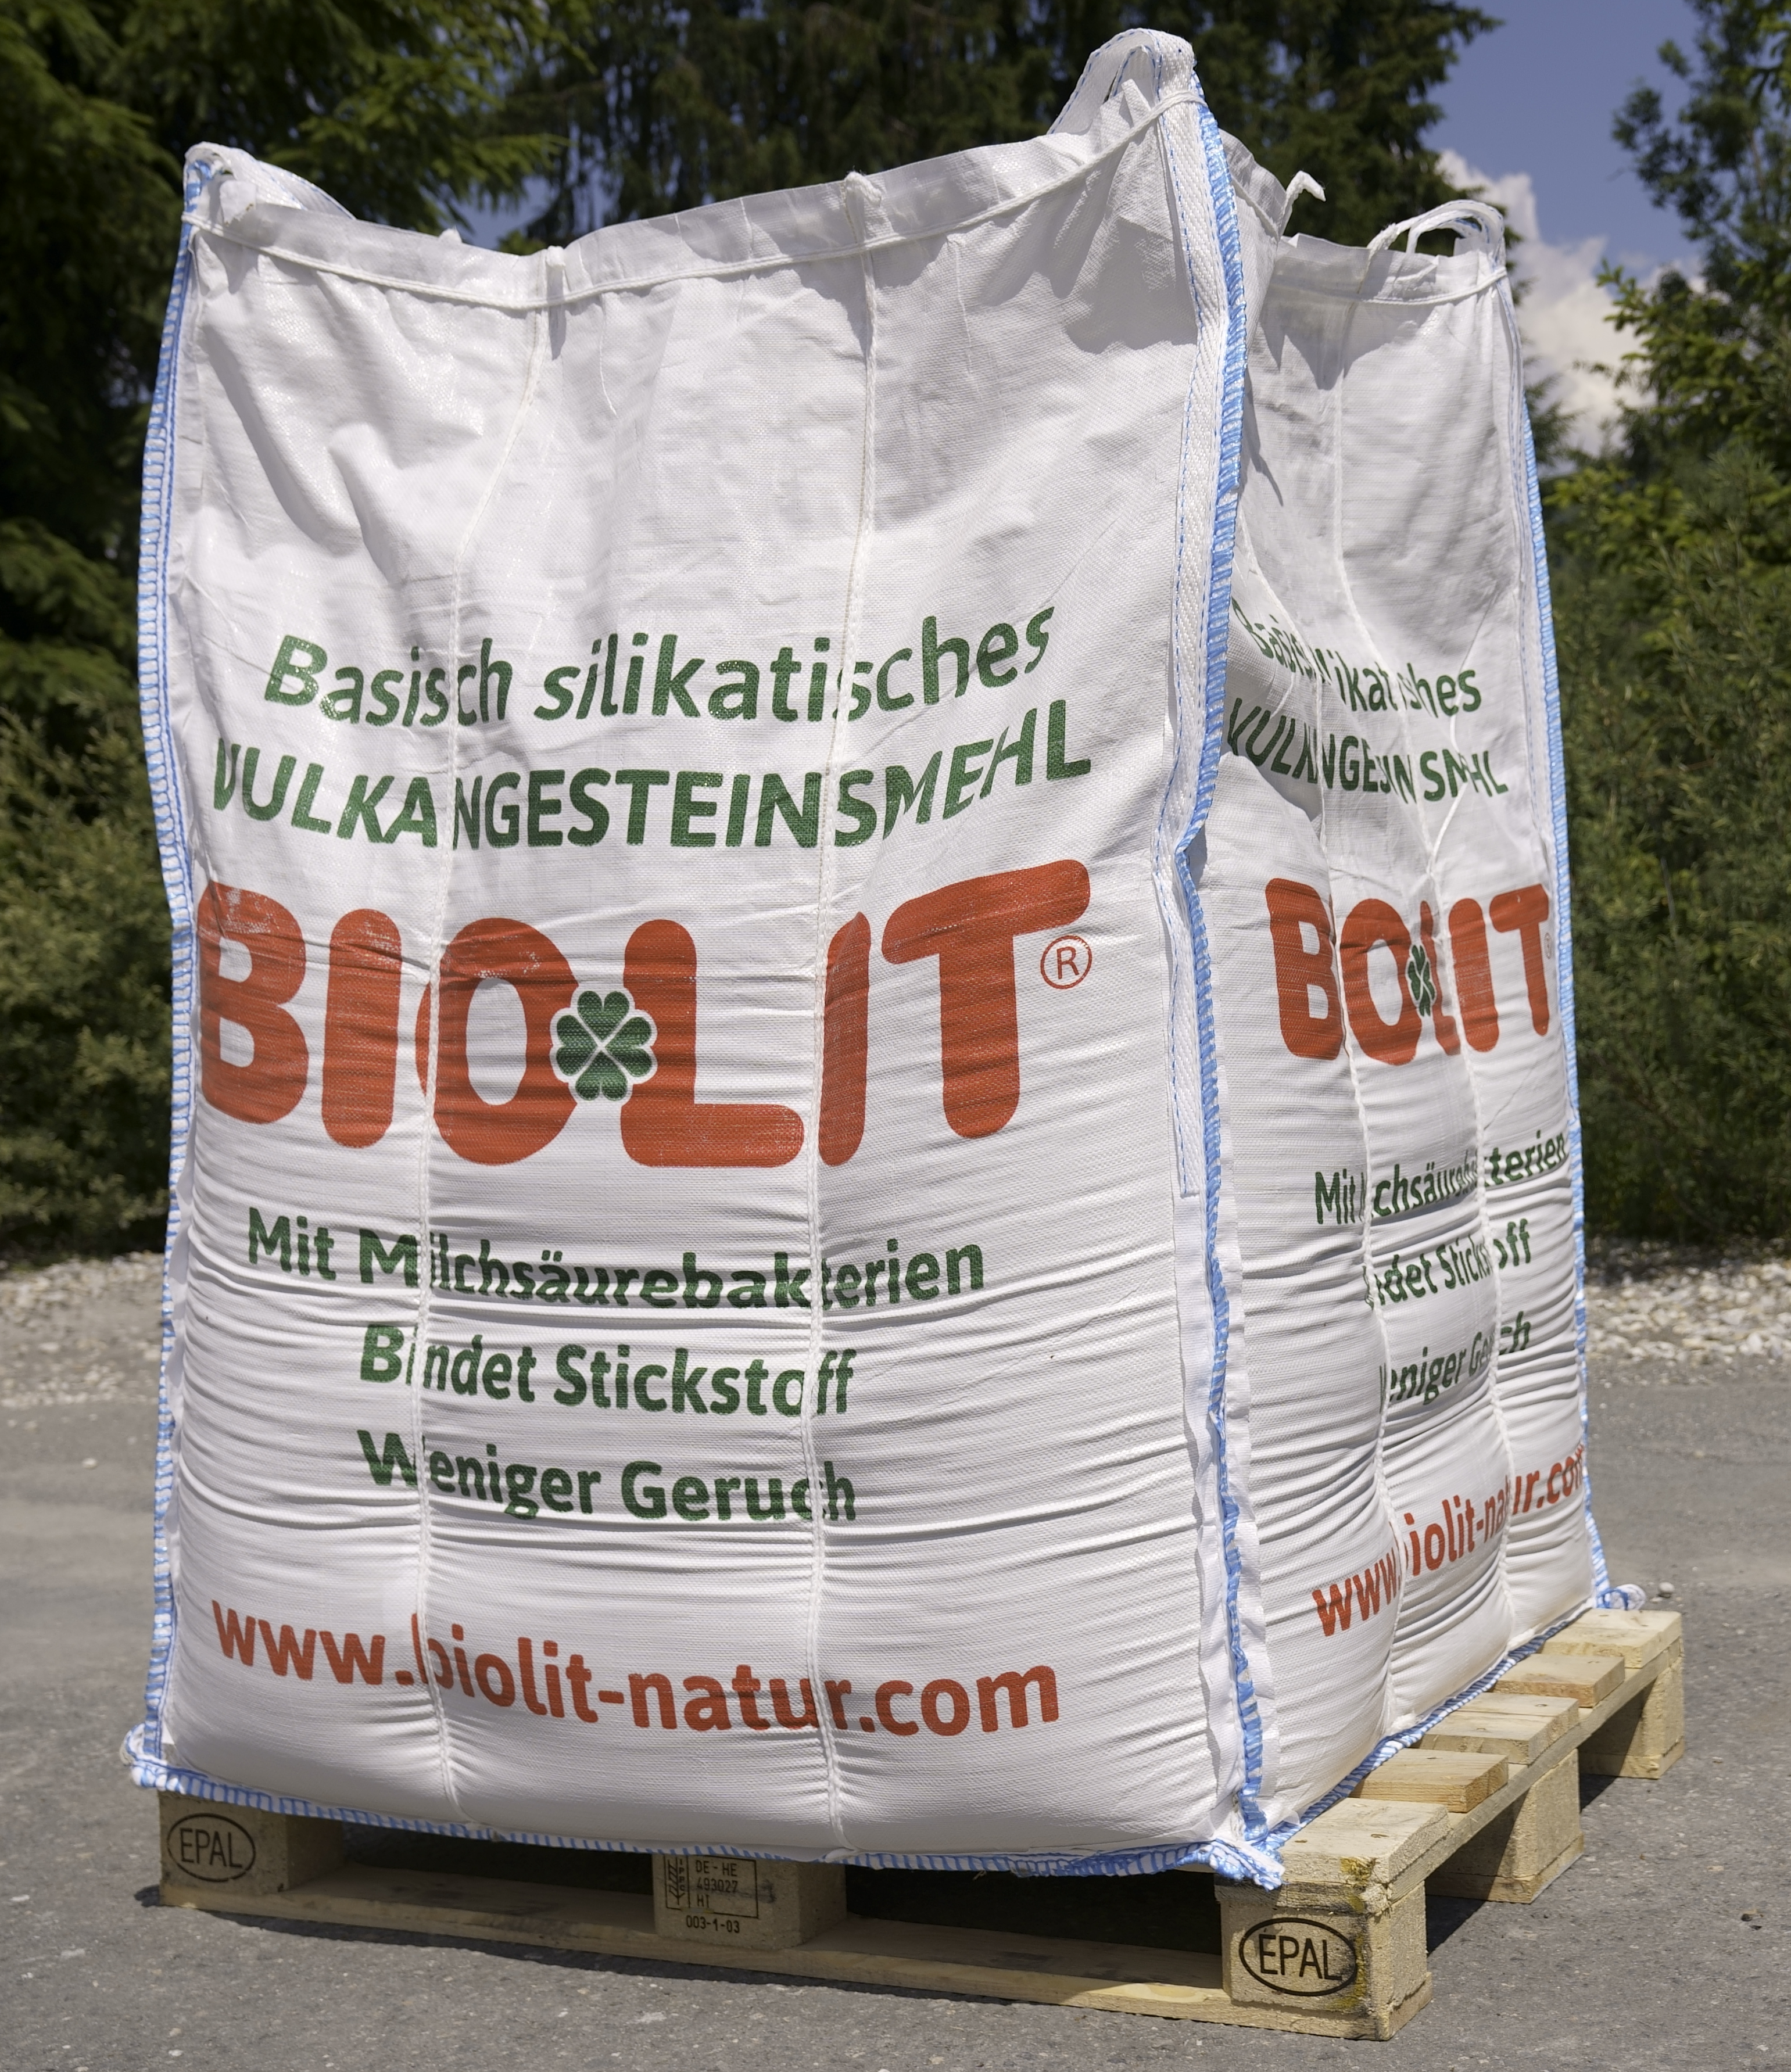 Farina di roccia primaria Bio-Lit 1'200kg (Big Bag)